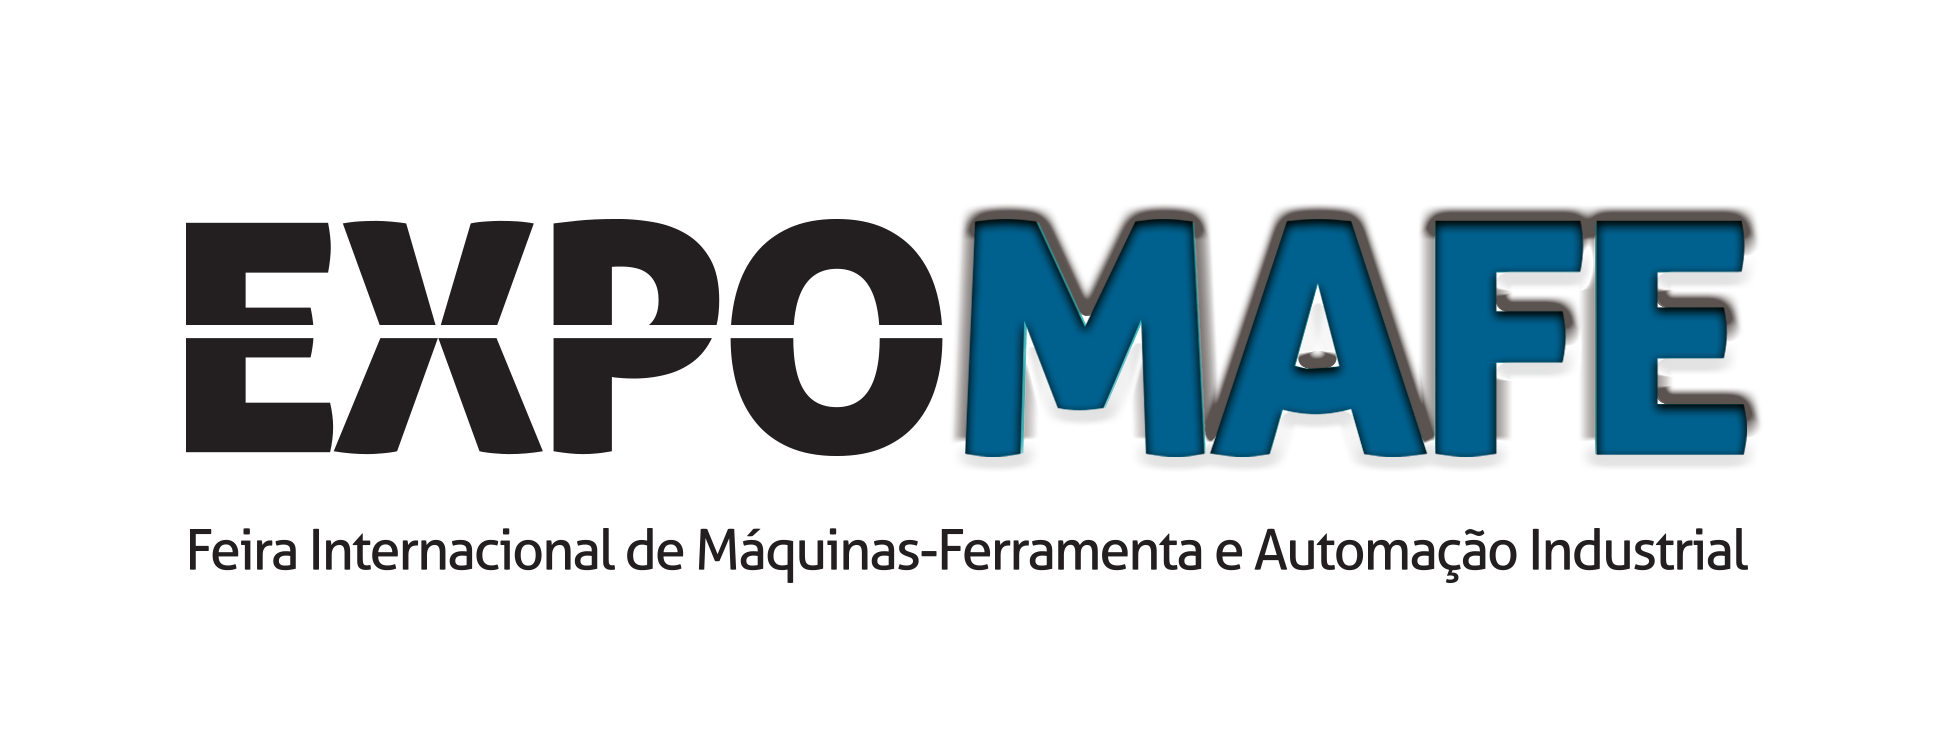 EXPOMAFE – Feira Internacional de Máquinas-Ferramenta e Automação Industrial  De 9 a 13 de maio, no São Paulo Expo   